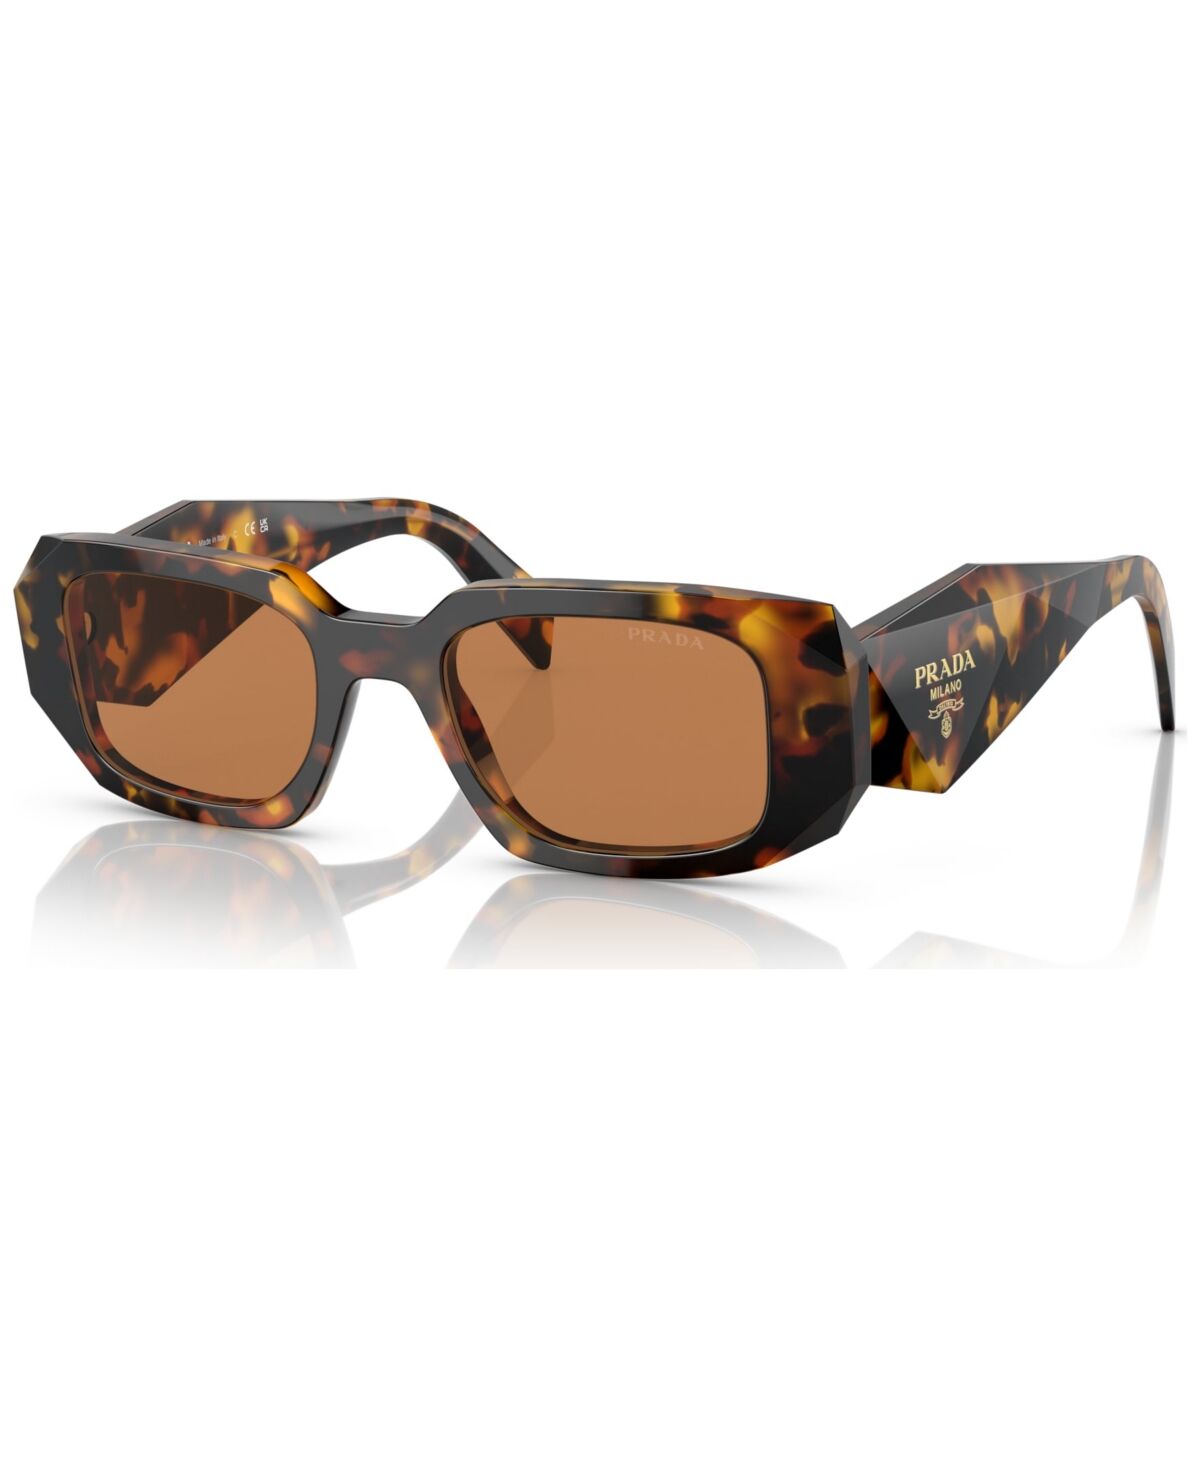 Prada Women's Sunglasses, Pr 17WS - Honey Tortoise